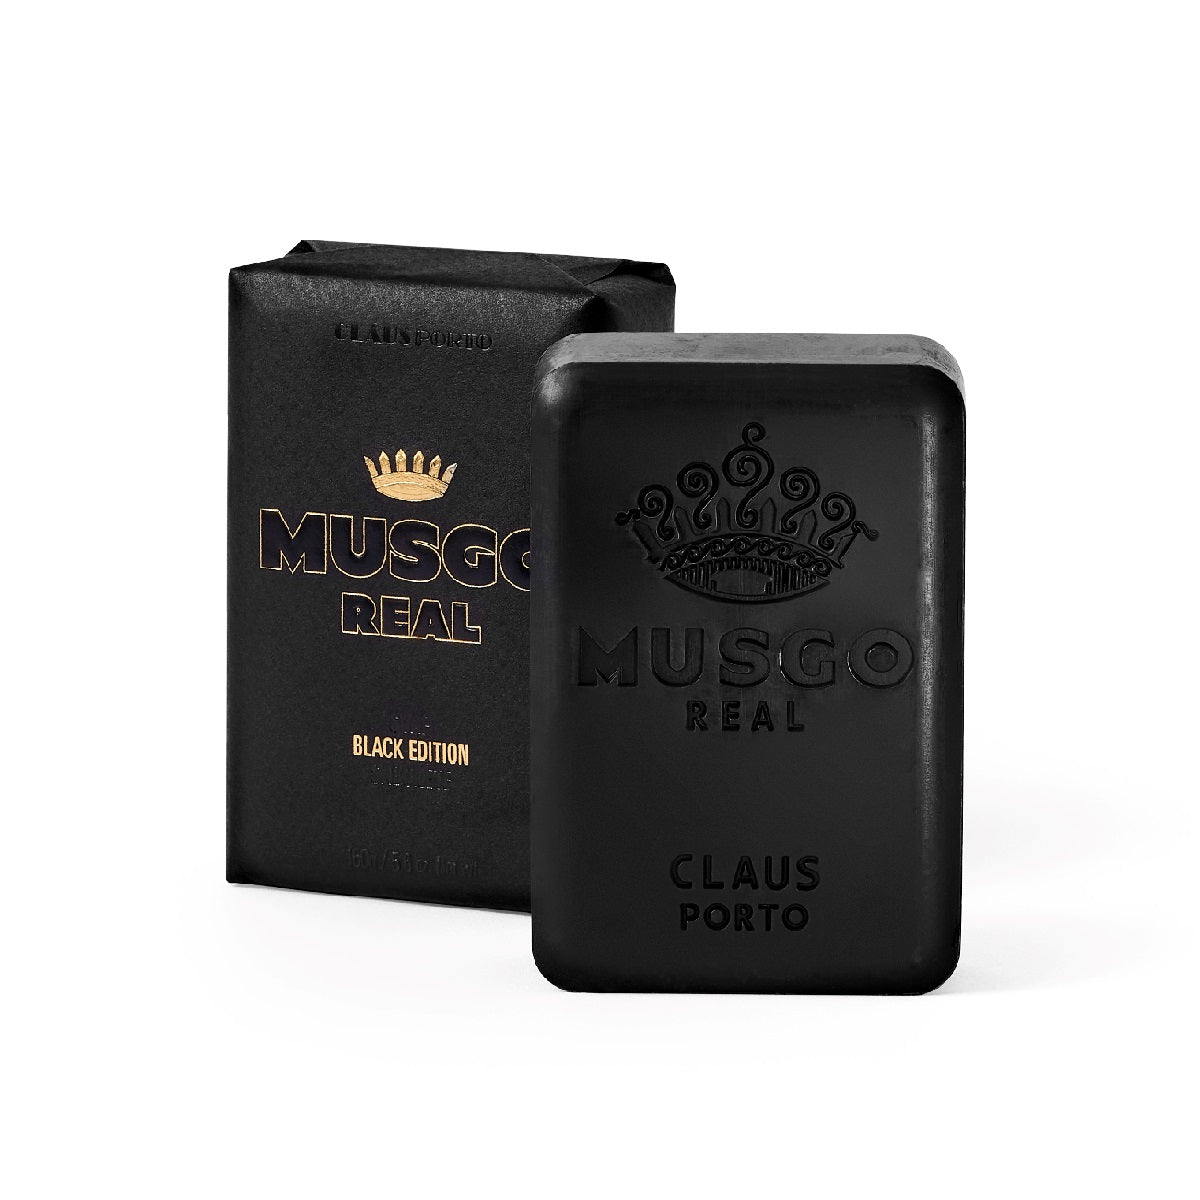 claus porto black edition body soap musgo real small